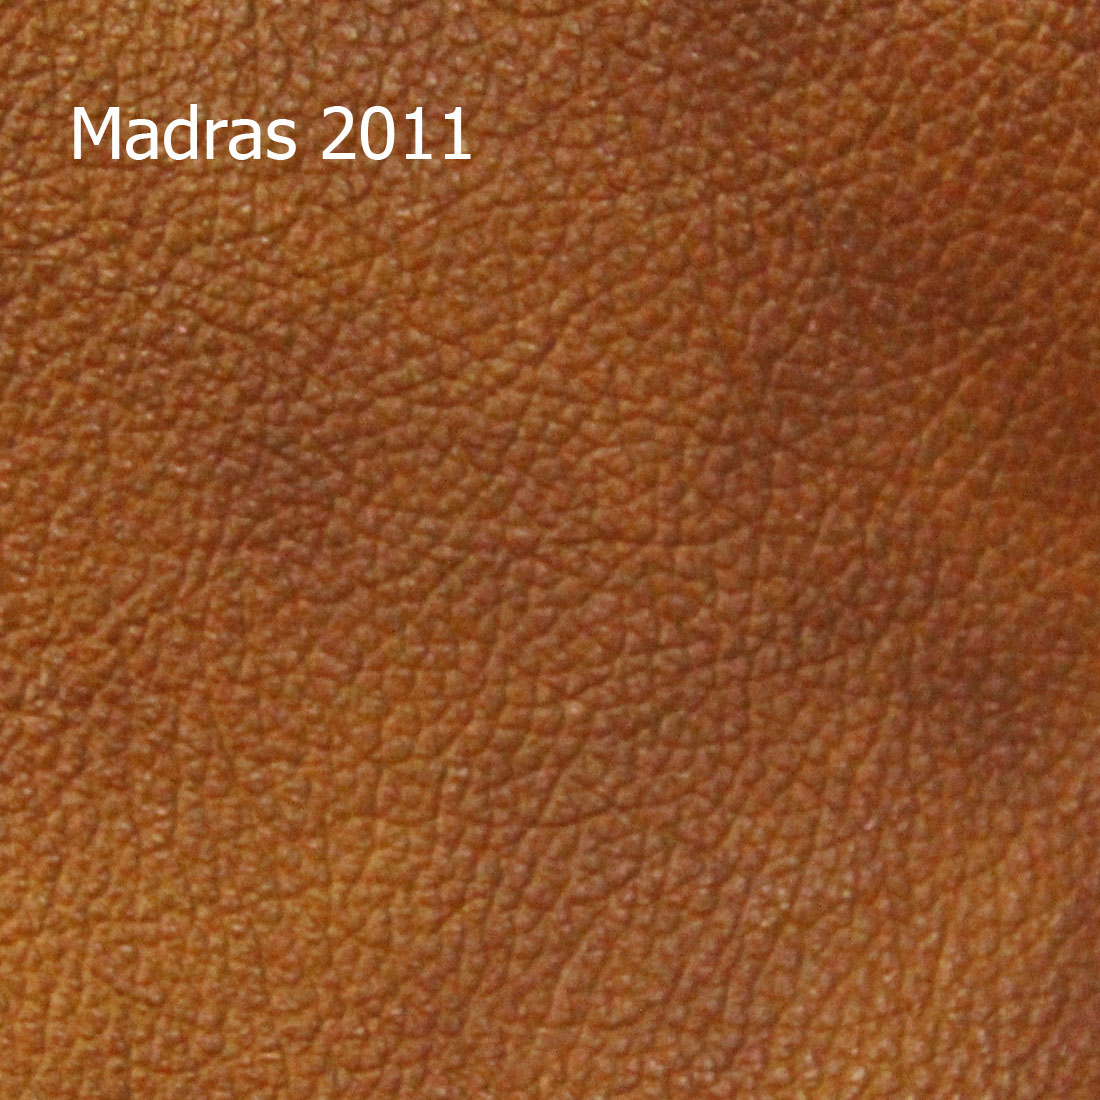 Madras 2011